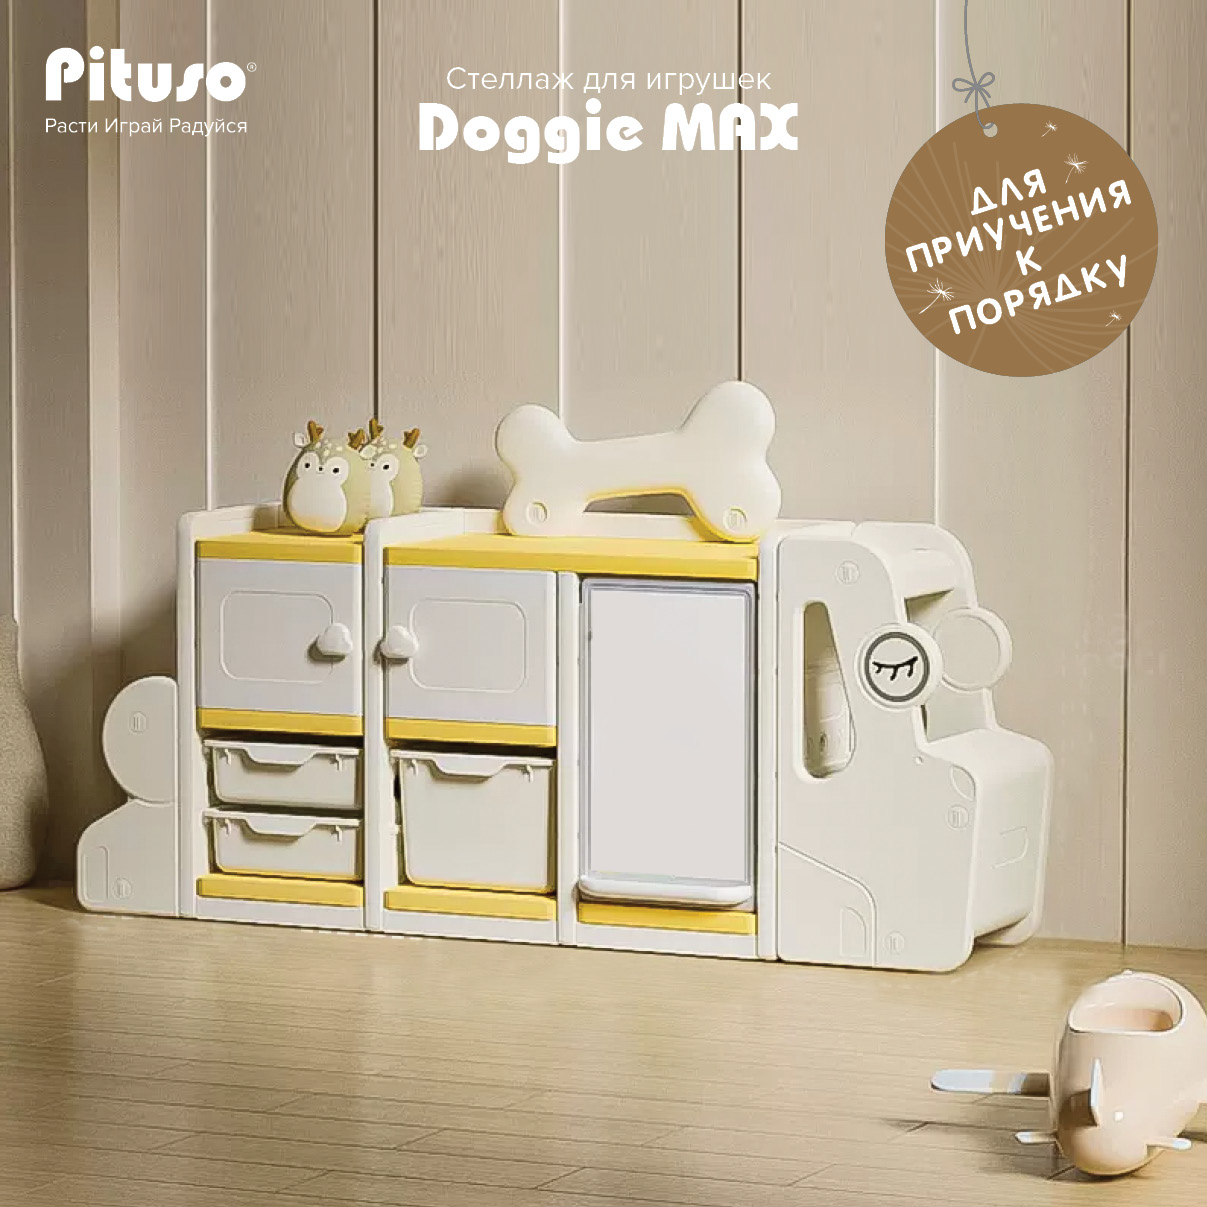 Стеллаж для игрушек с ящиками Pituso Doggie Max, доска для рисования, бежевый, желтый подставка под горячее керамика 15х20 см бежевый мрамор доска y4 6663